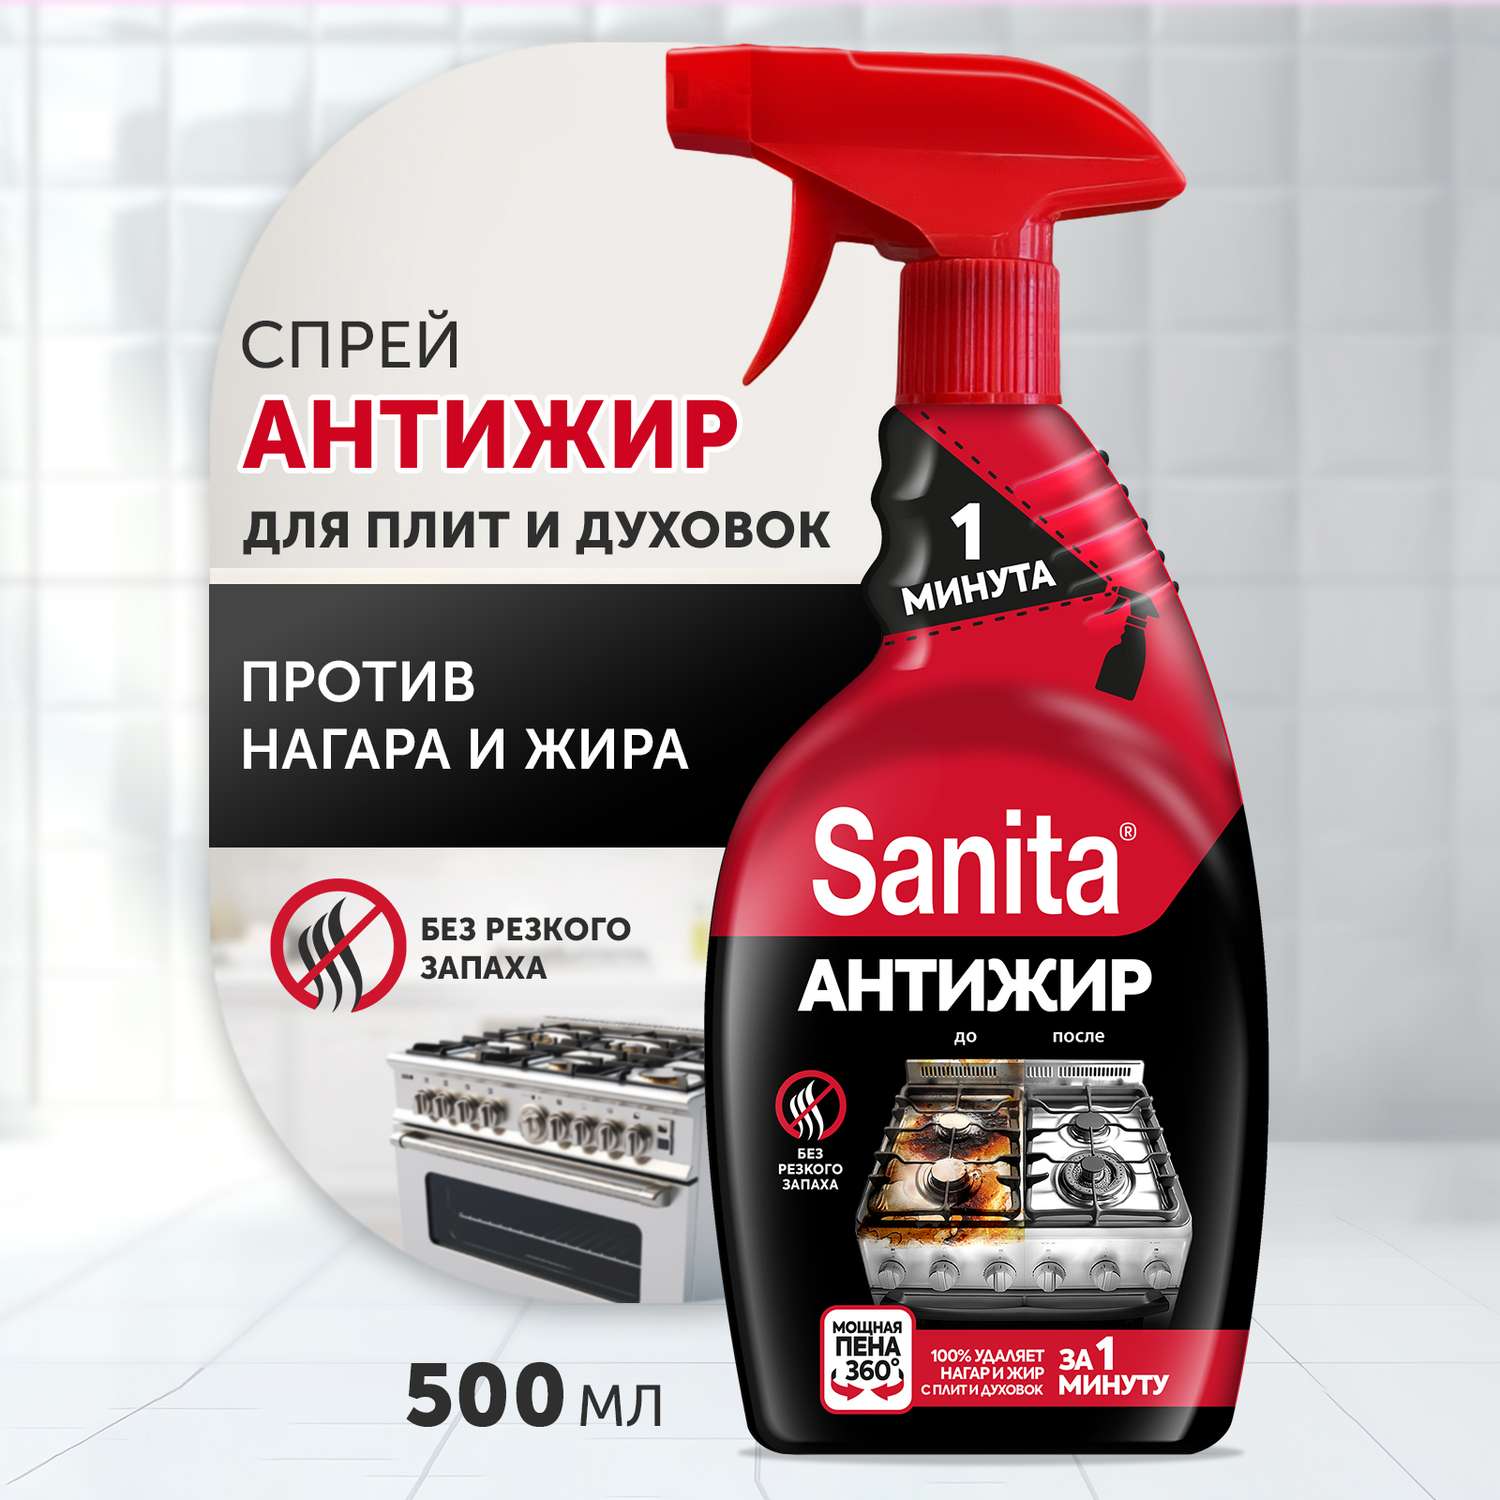 Набор бытовой химии Sanita для уборки дома 4 штуки - фото 2